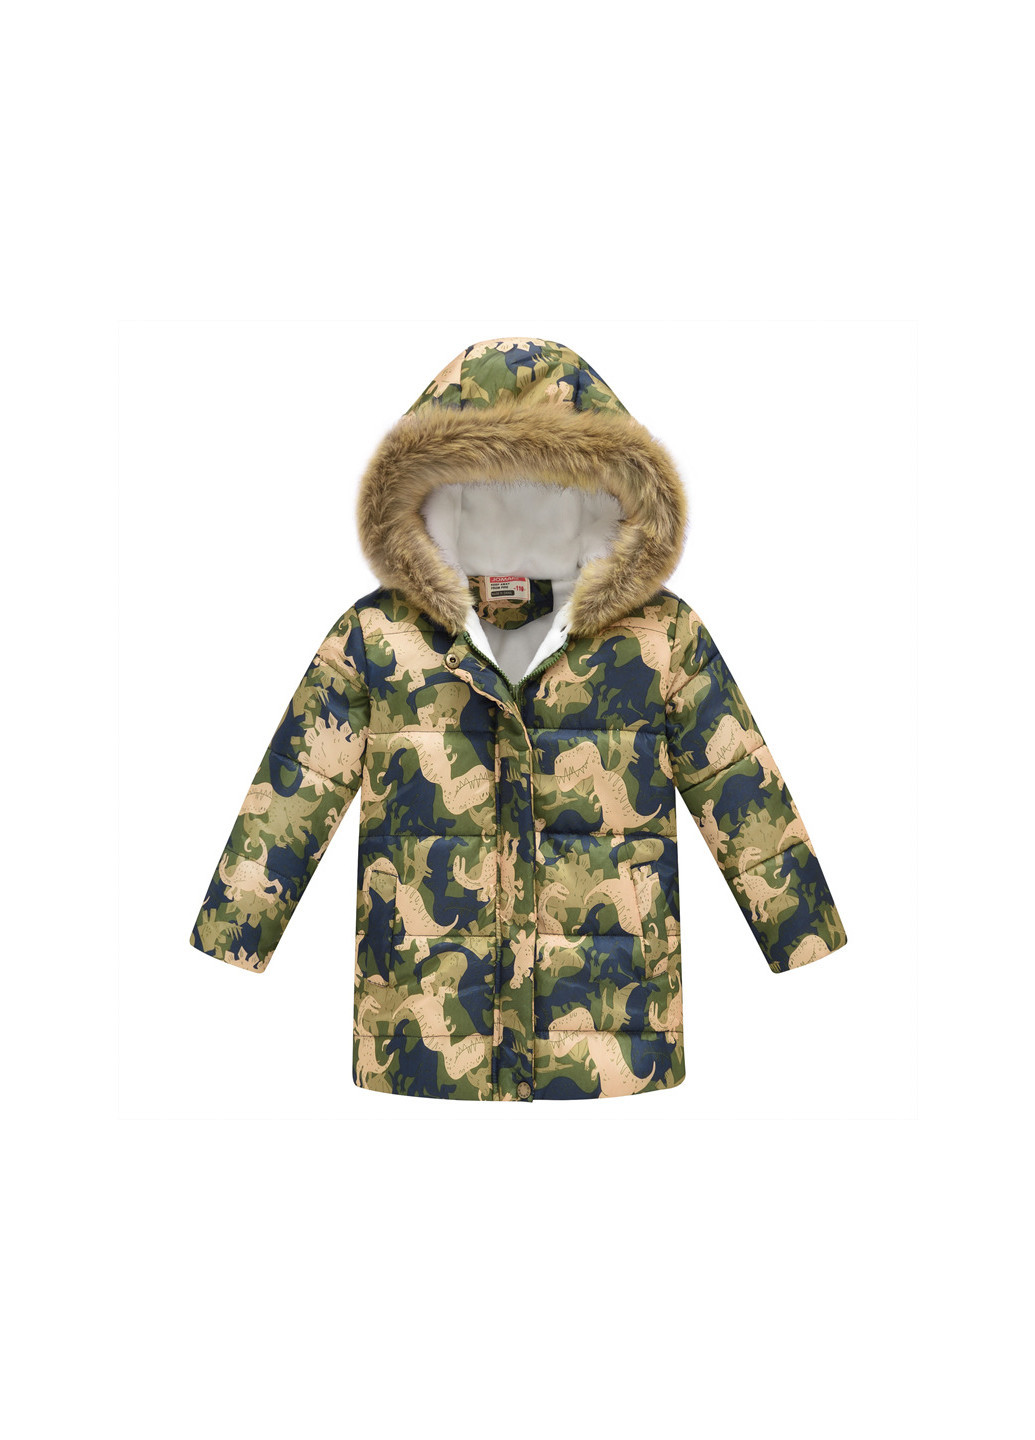 Оливковая (хаки) демисезонная куртка для мальчика демисезонная dino world Jomake 56475